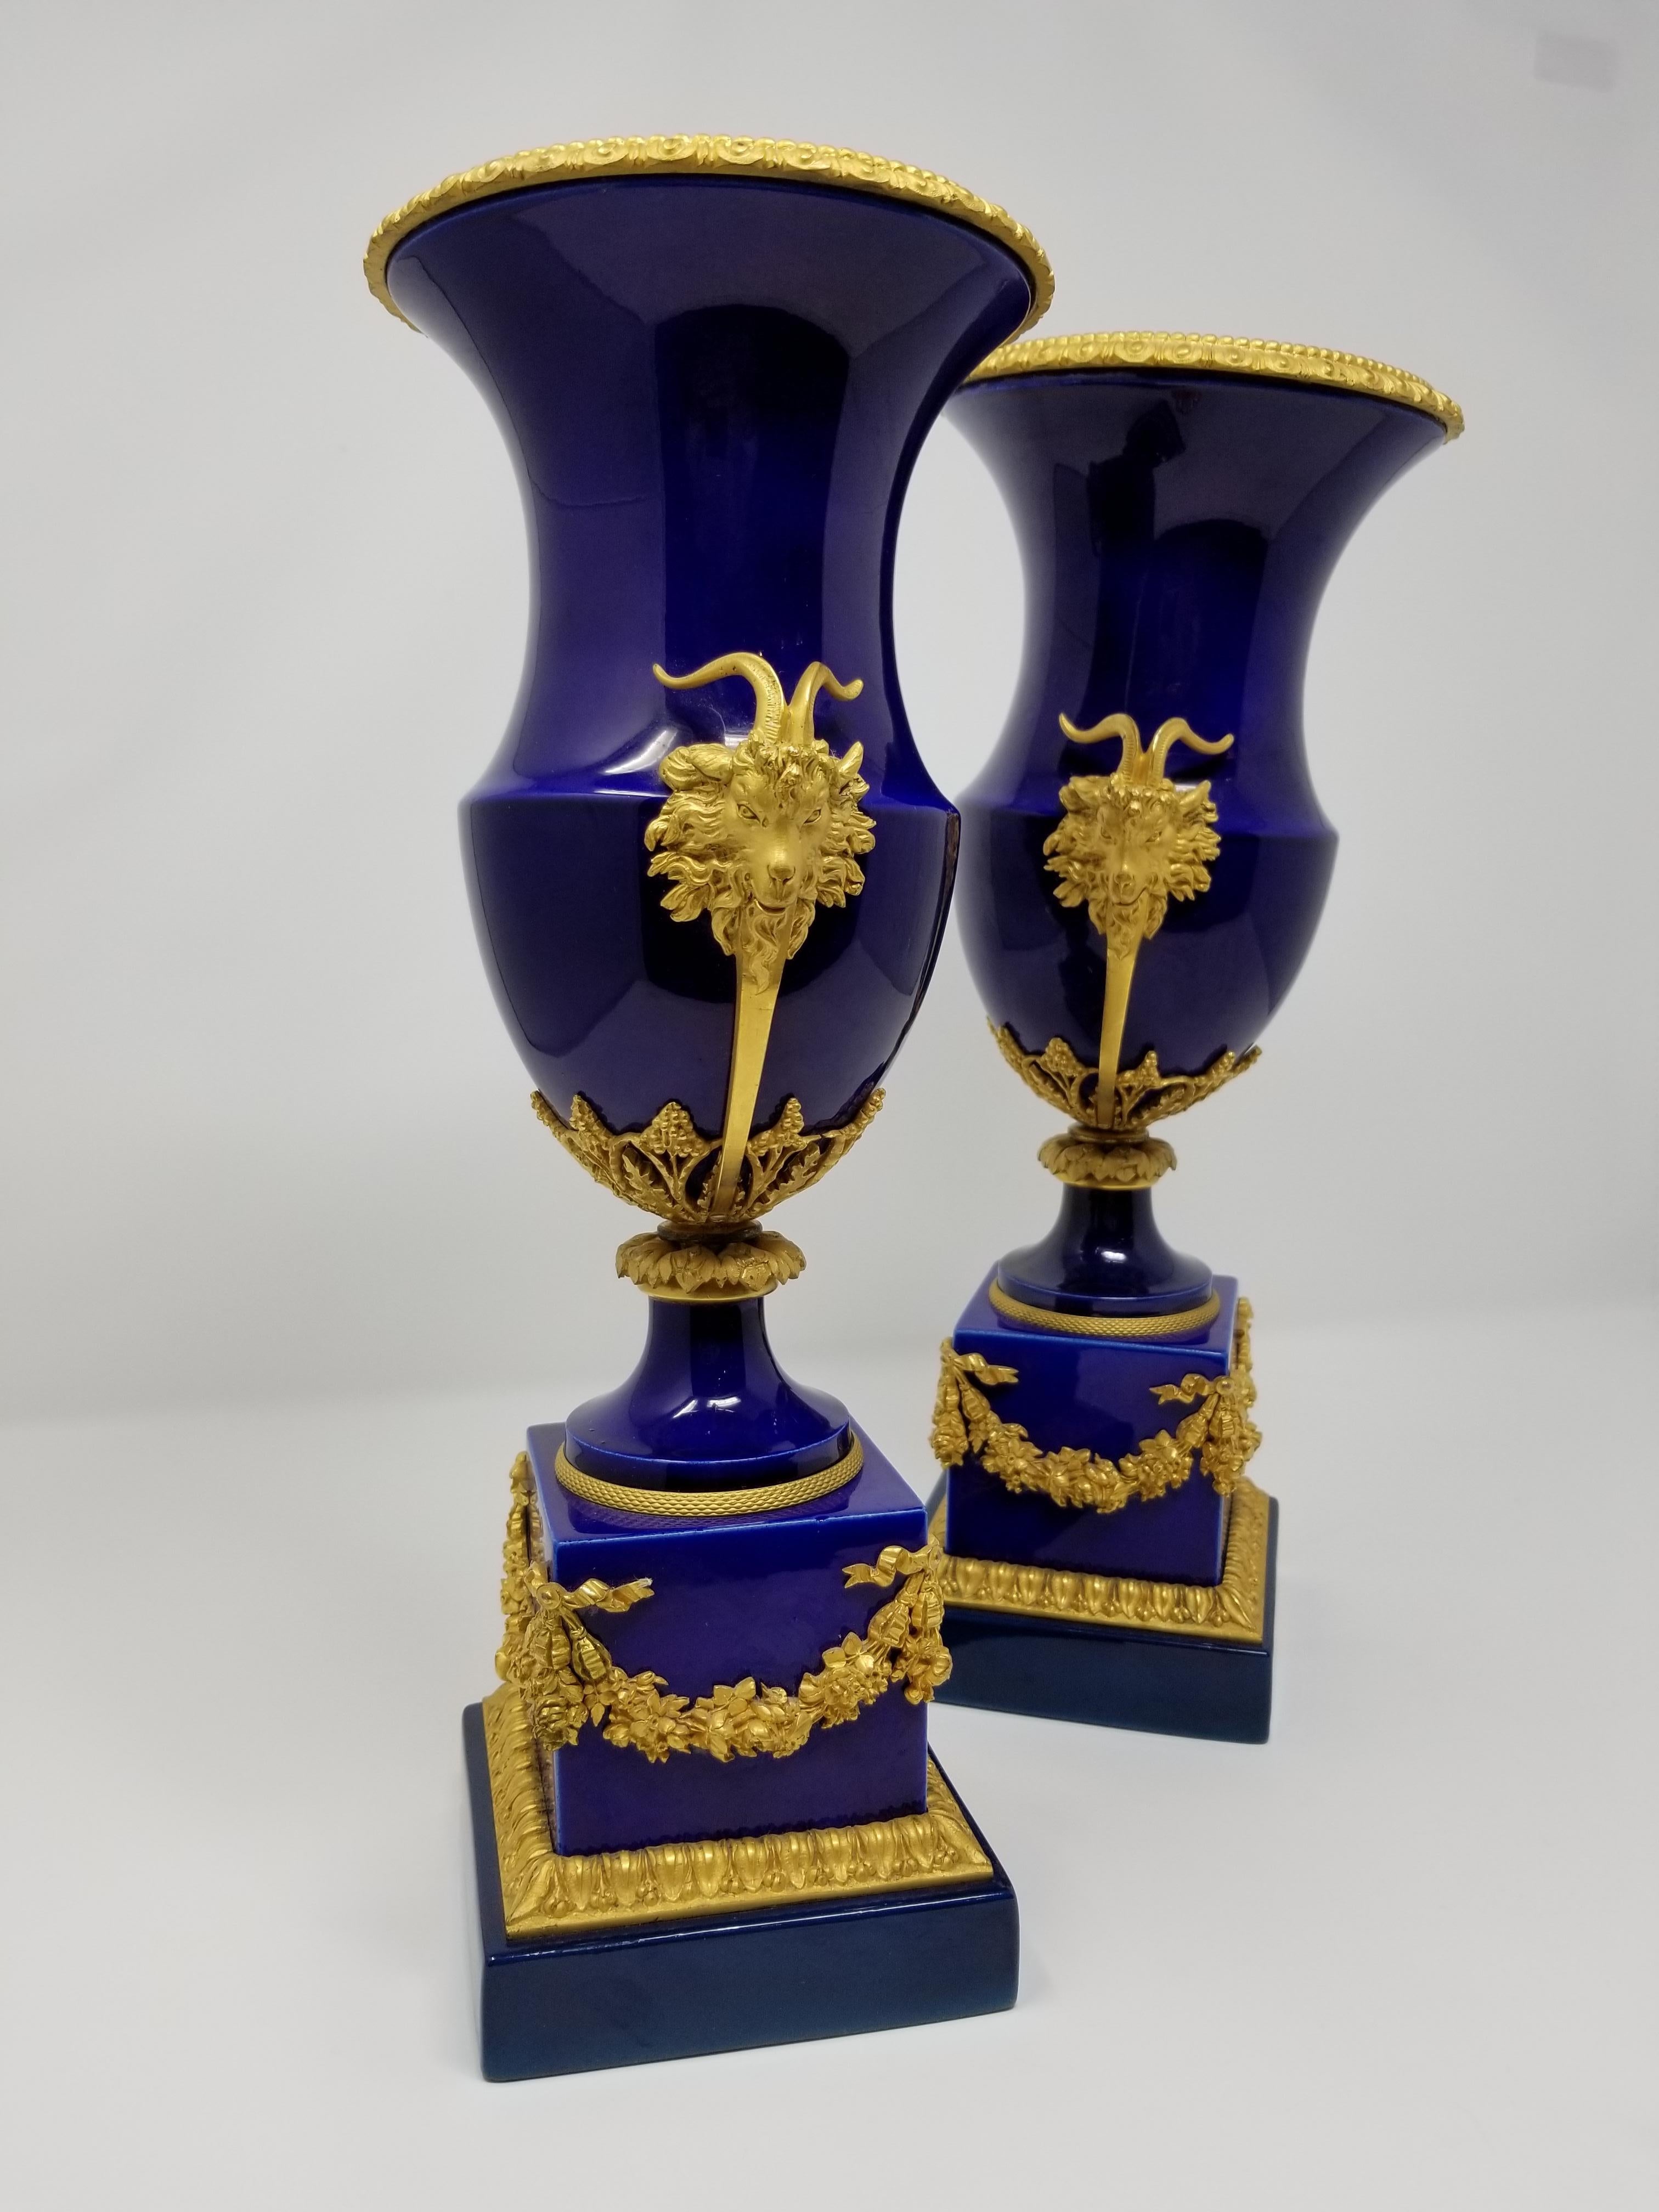 Magnifique paire de vases montés en bleu de cobalt et en bronze doré à têtes de béliers et couronnes, de style Louis XVI, datant du 19e siècle, à Sèvres. Le corps en porcelaine est magnifiquement peint du bleu de cobalt caractéristique de Sèvres